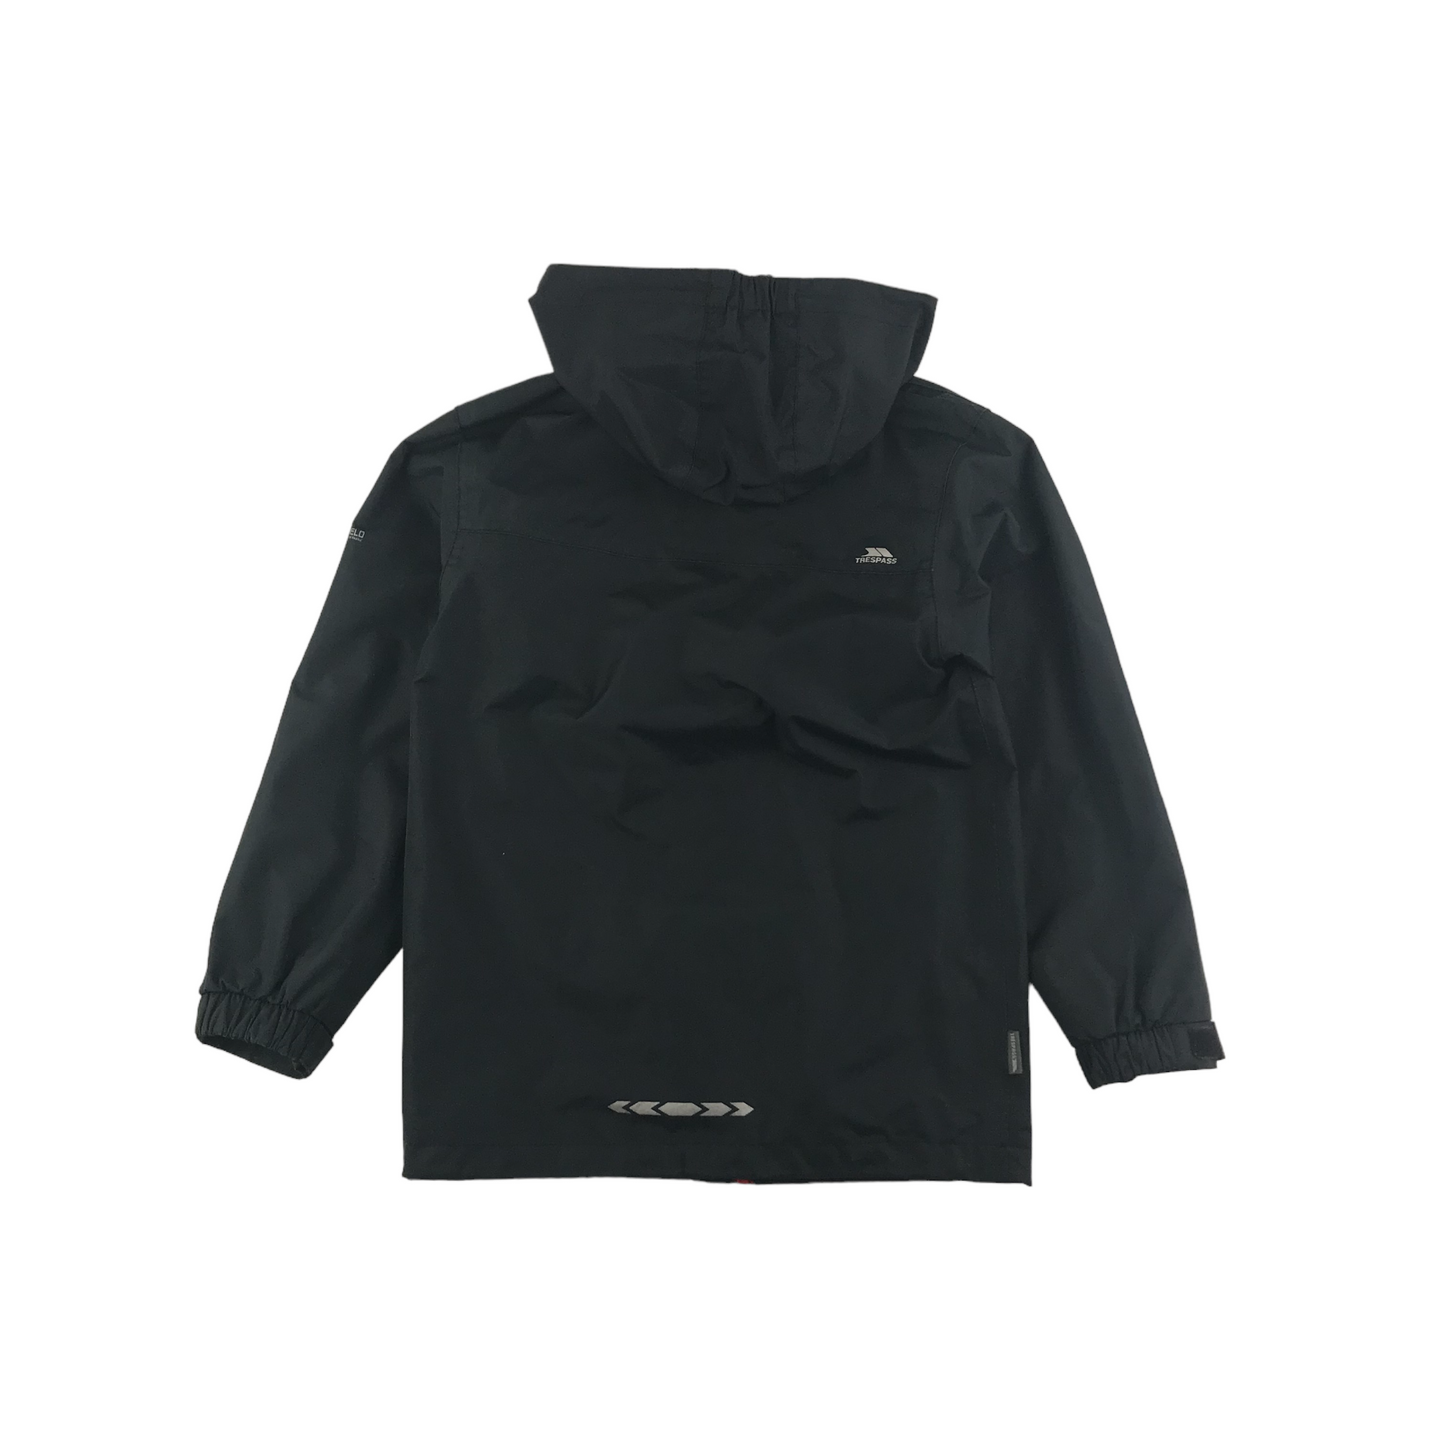 Trespass Waterproof Jacket Age 7 Black Hooded